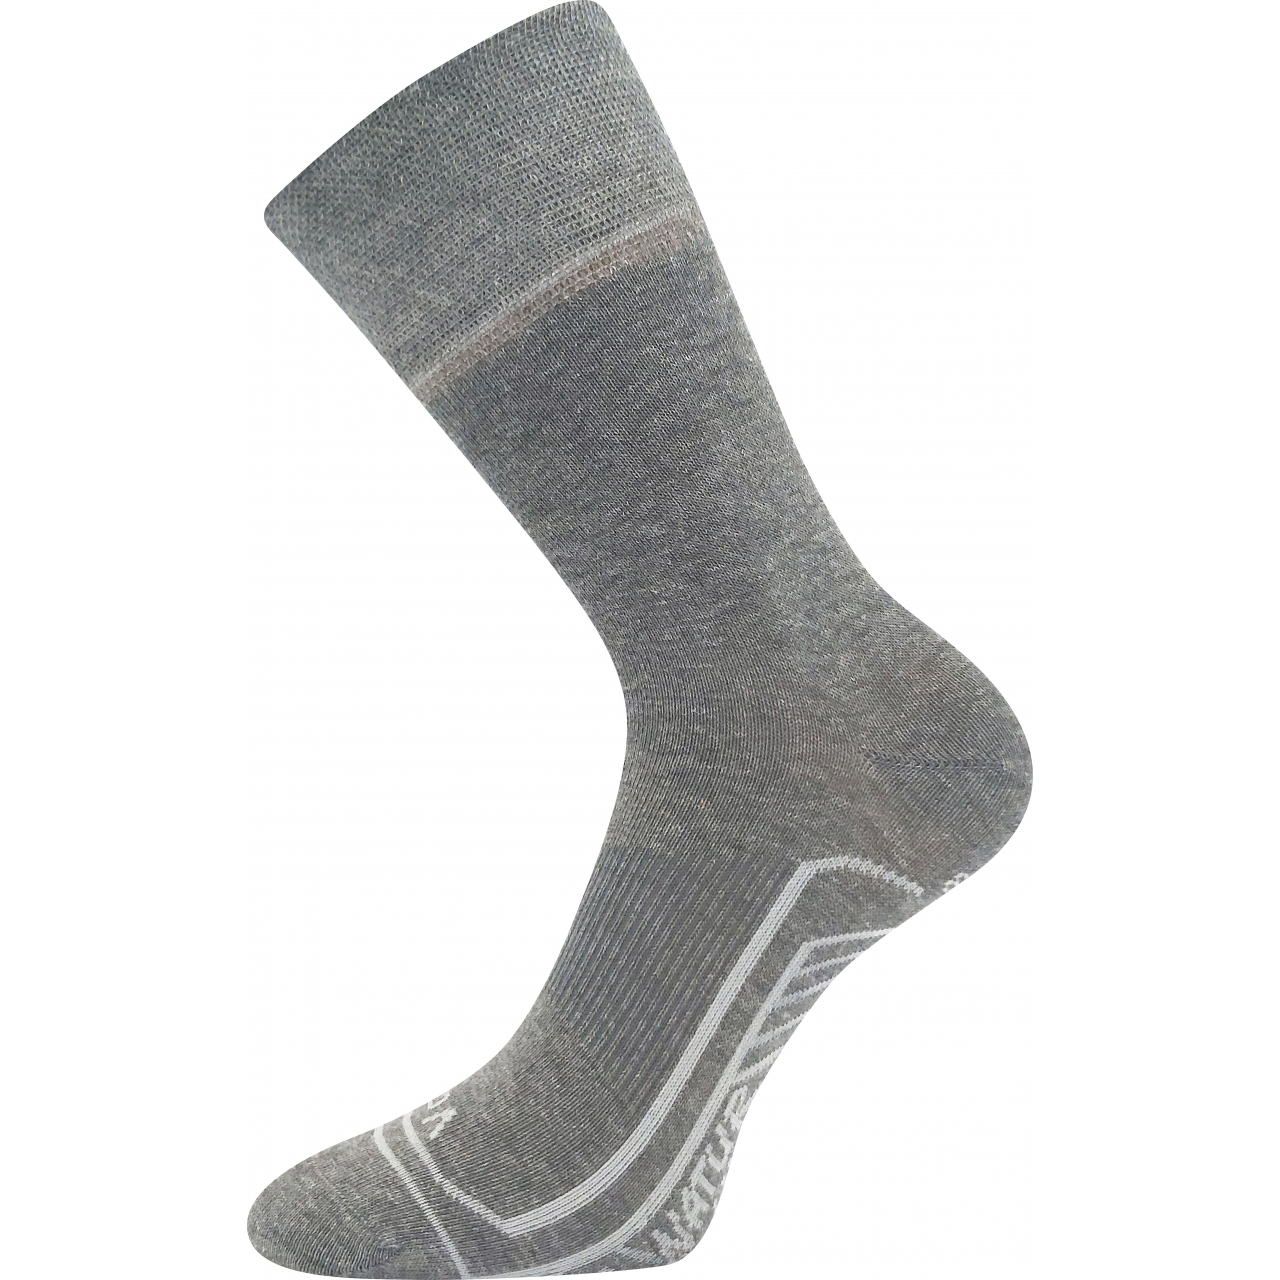 Ponožky unisex Voxx Linemul - šedé, 43-46